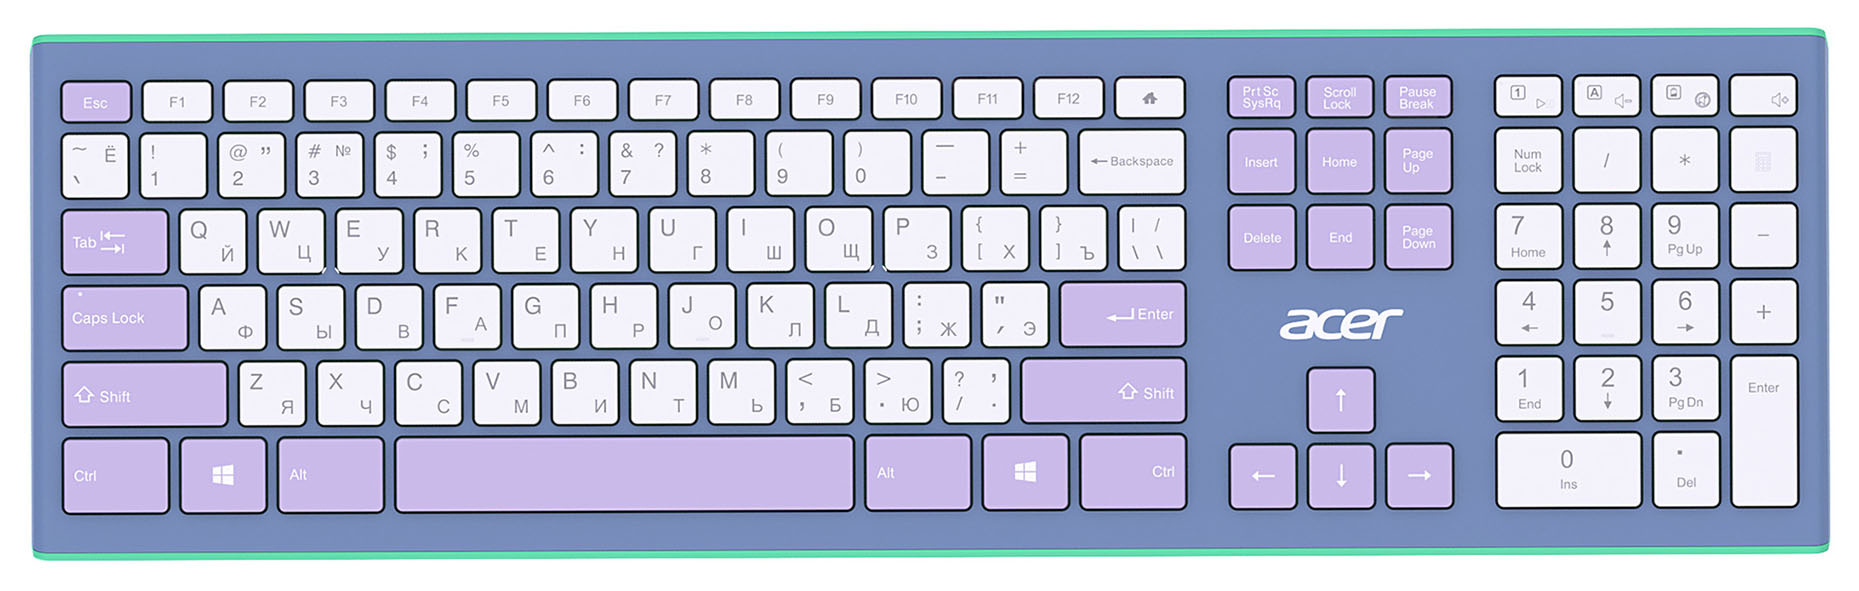 Клавиатура + мышь Acer OCC200 клав:зелёный/фиолетовый мышь:зелёный/фиолетовый USB беспроводная slim Multimedia